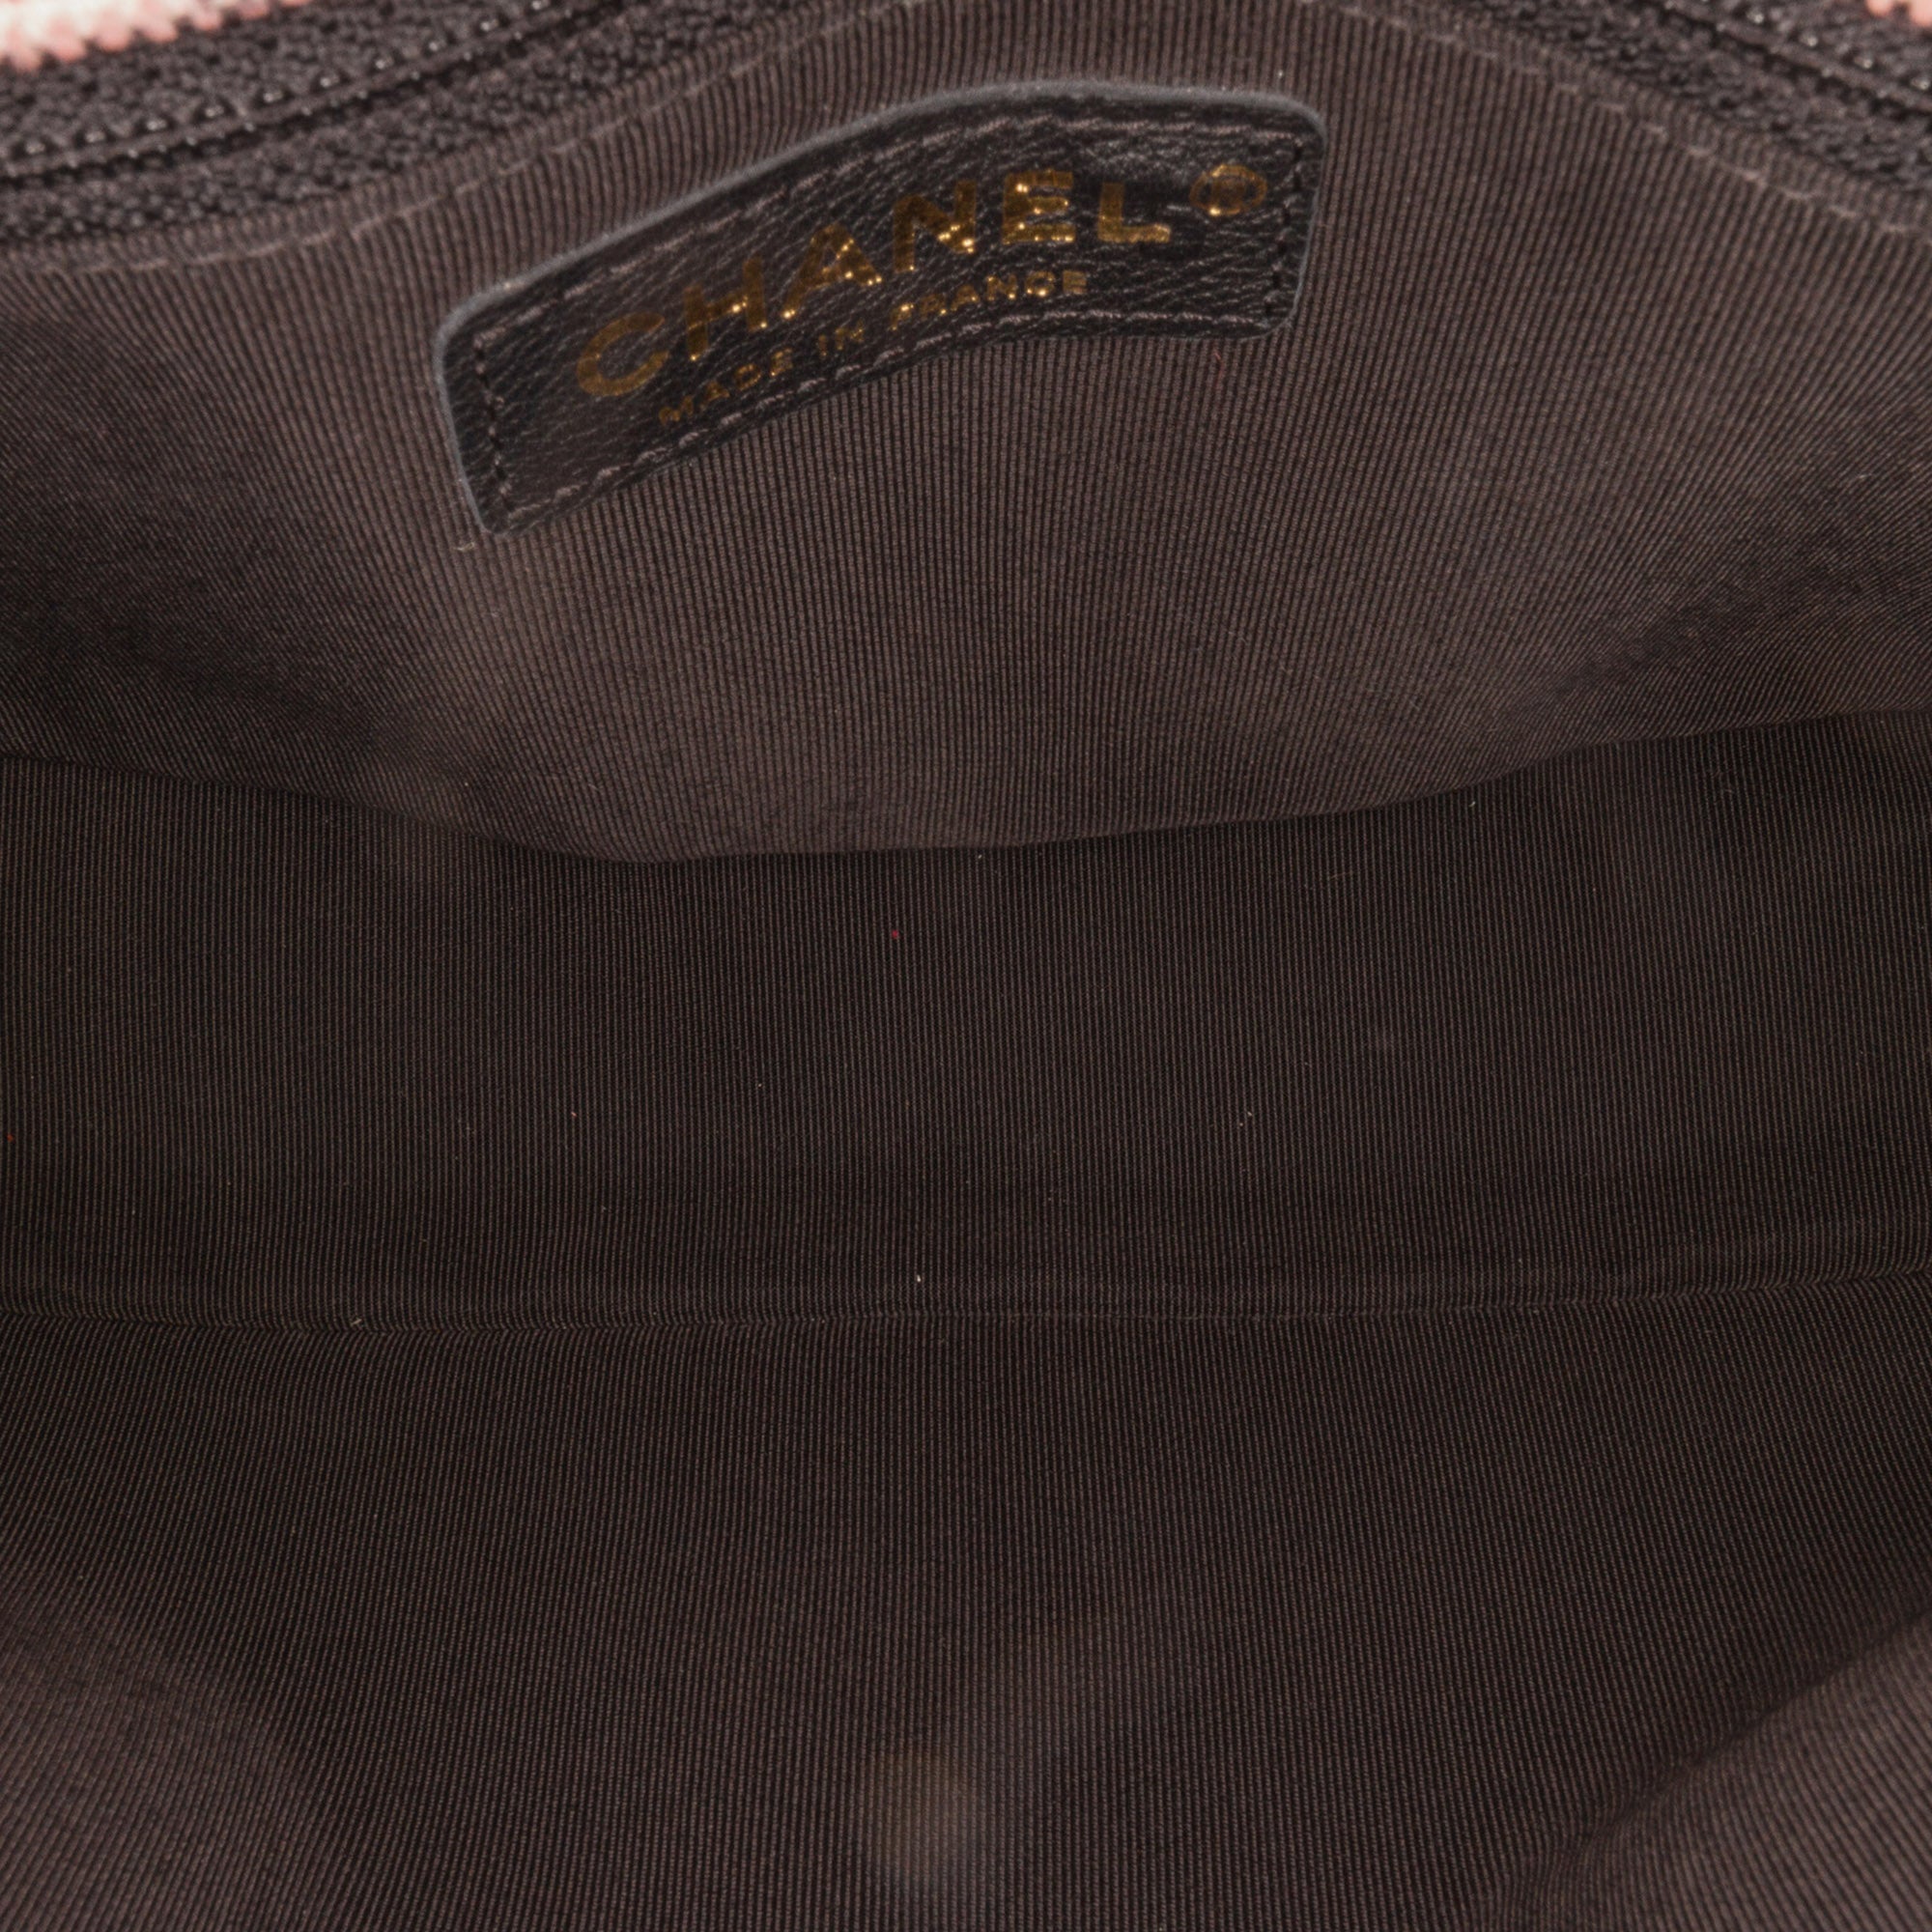 Pink Chanel Camellia Scarf Ribbon Shoulder Bag – Designer Revival